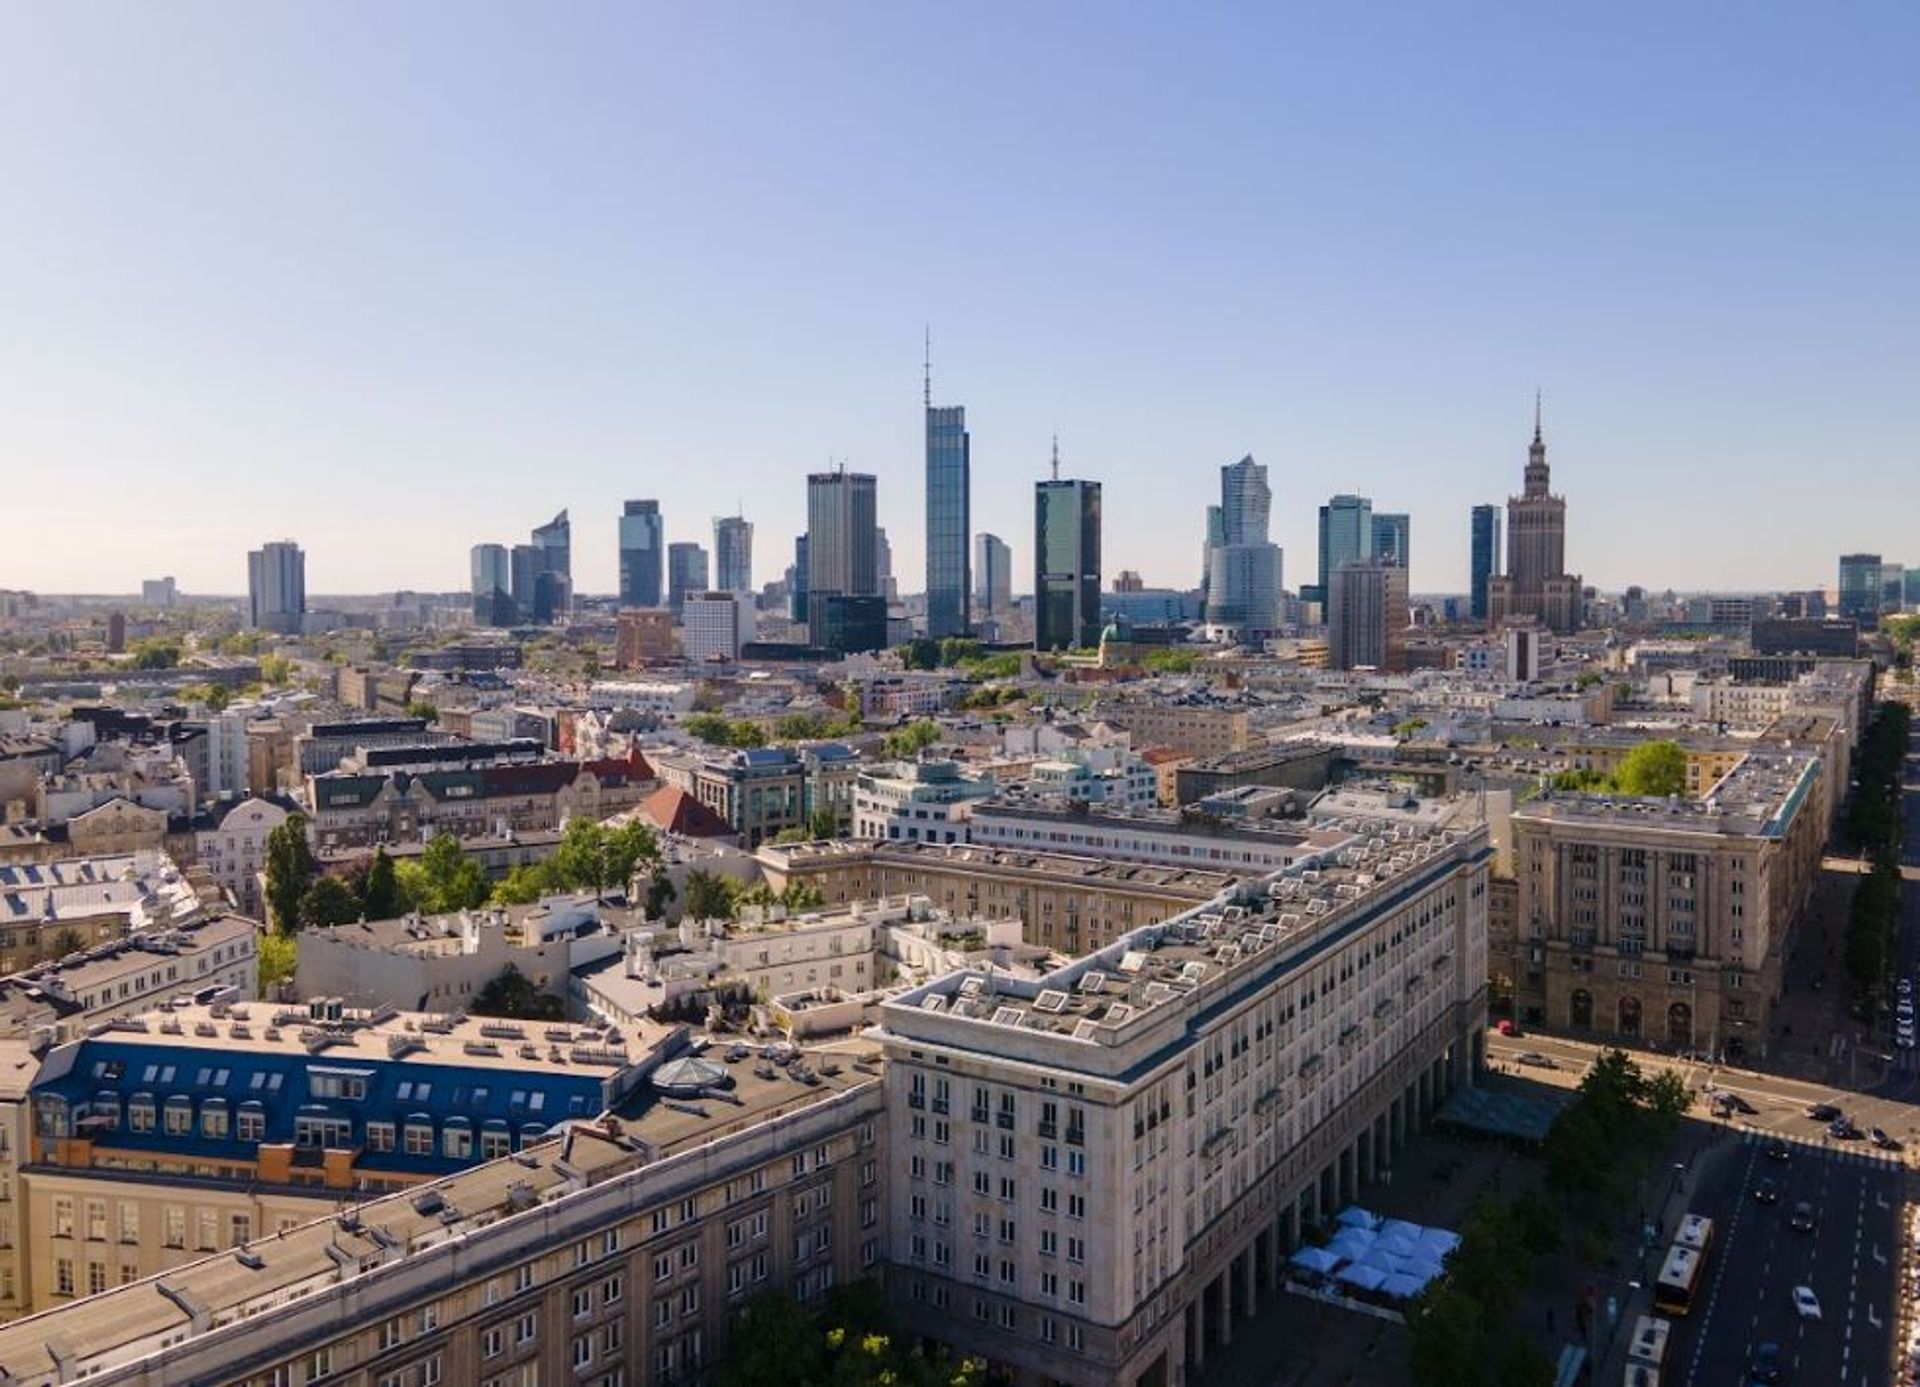 Czynsze za najem mieszkań w Warszawie niemal tak wysokie jak w Brukseli 